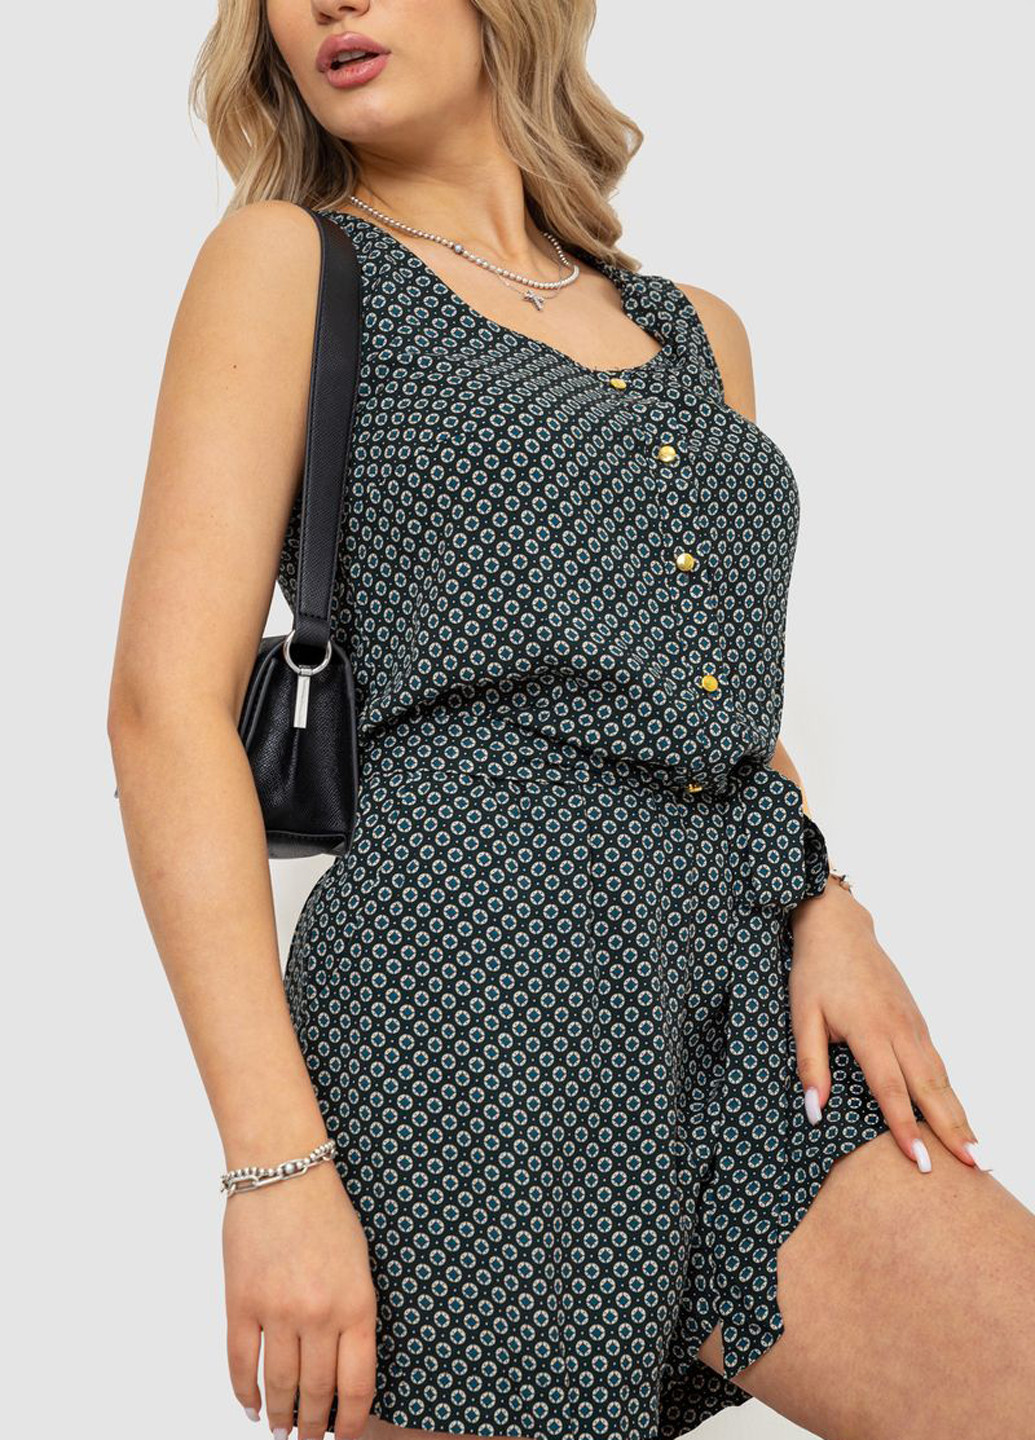 Комбинезон Ager комбинезон-шорты геометрический темно-зелёный кэжуал хлопок